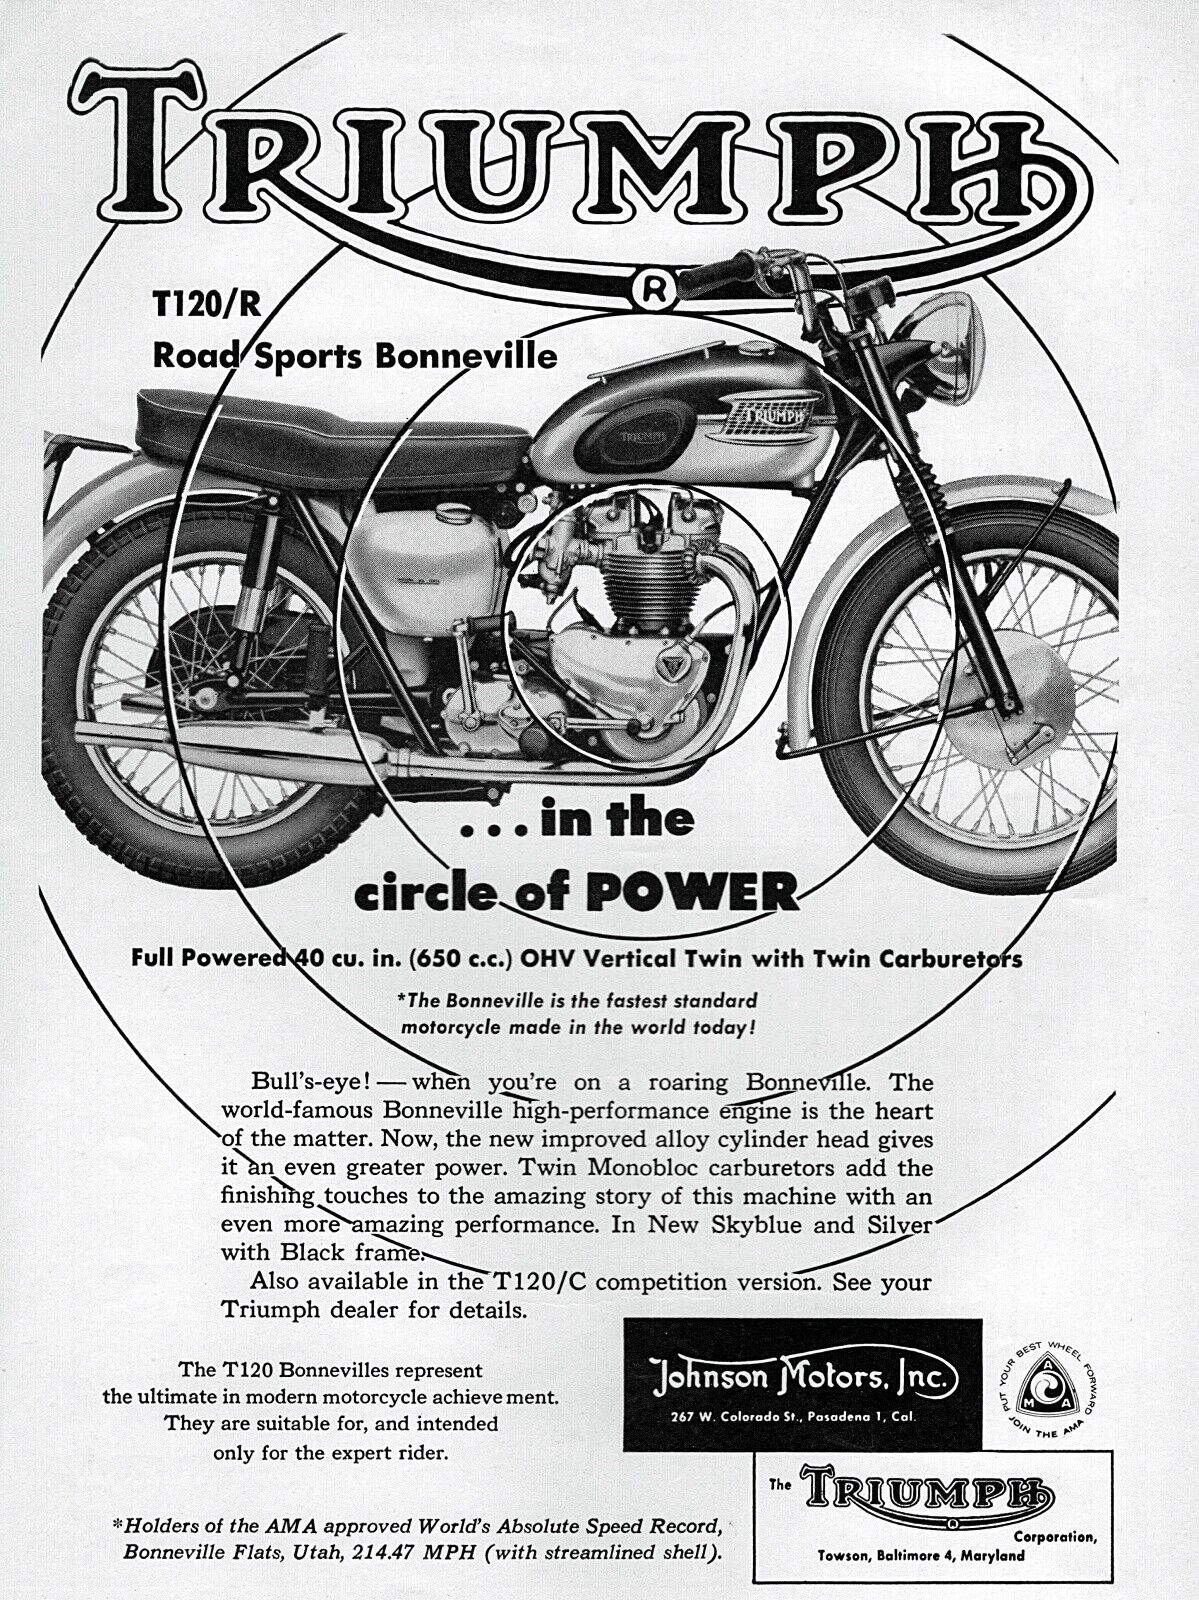 1961 Triumph Bonneville Road Sports Motorcycle  Original Print Ad